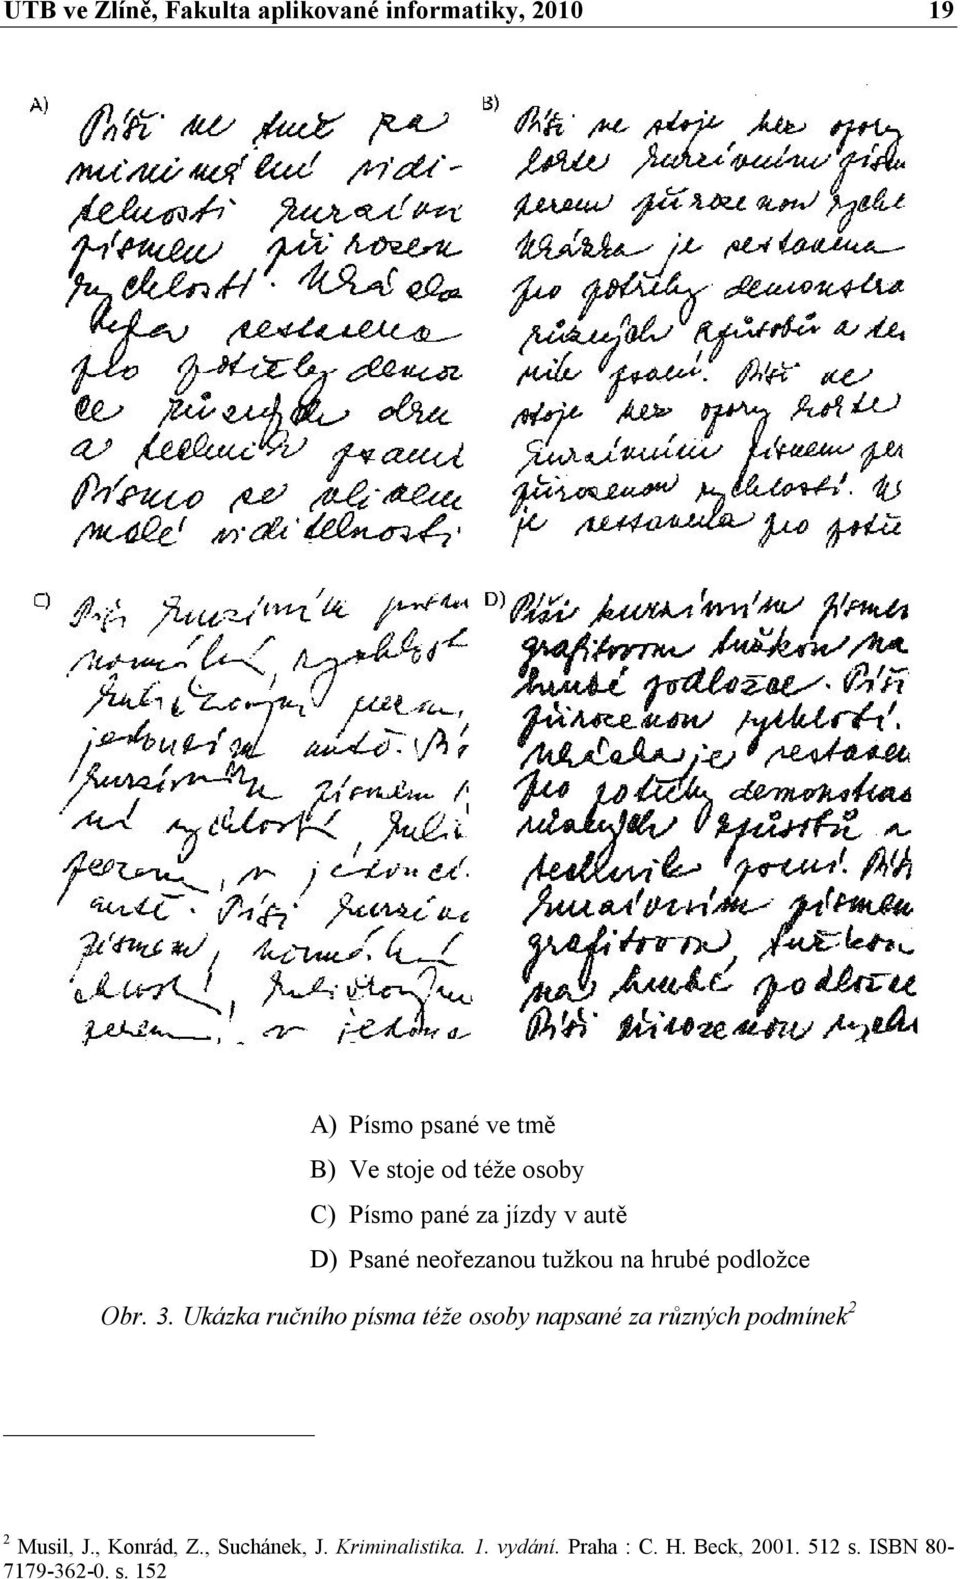 Ukázka ručního písma téže osoby napsané za různých podmínek 2 2 Musil, J., Konrád, Z.